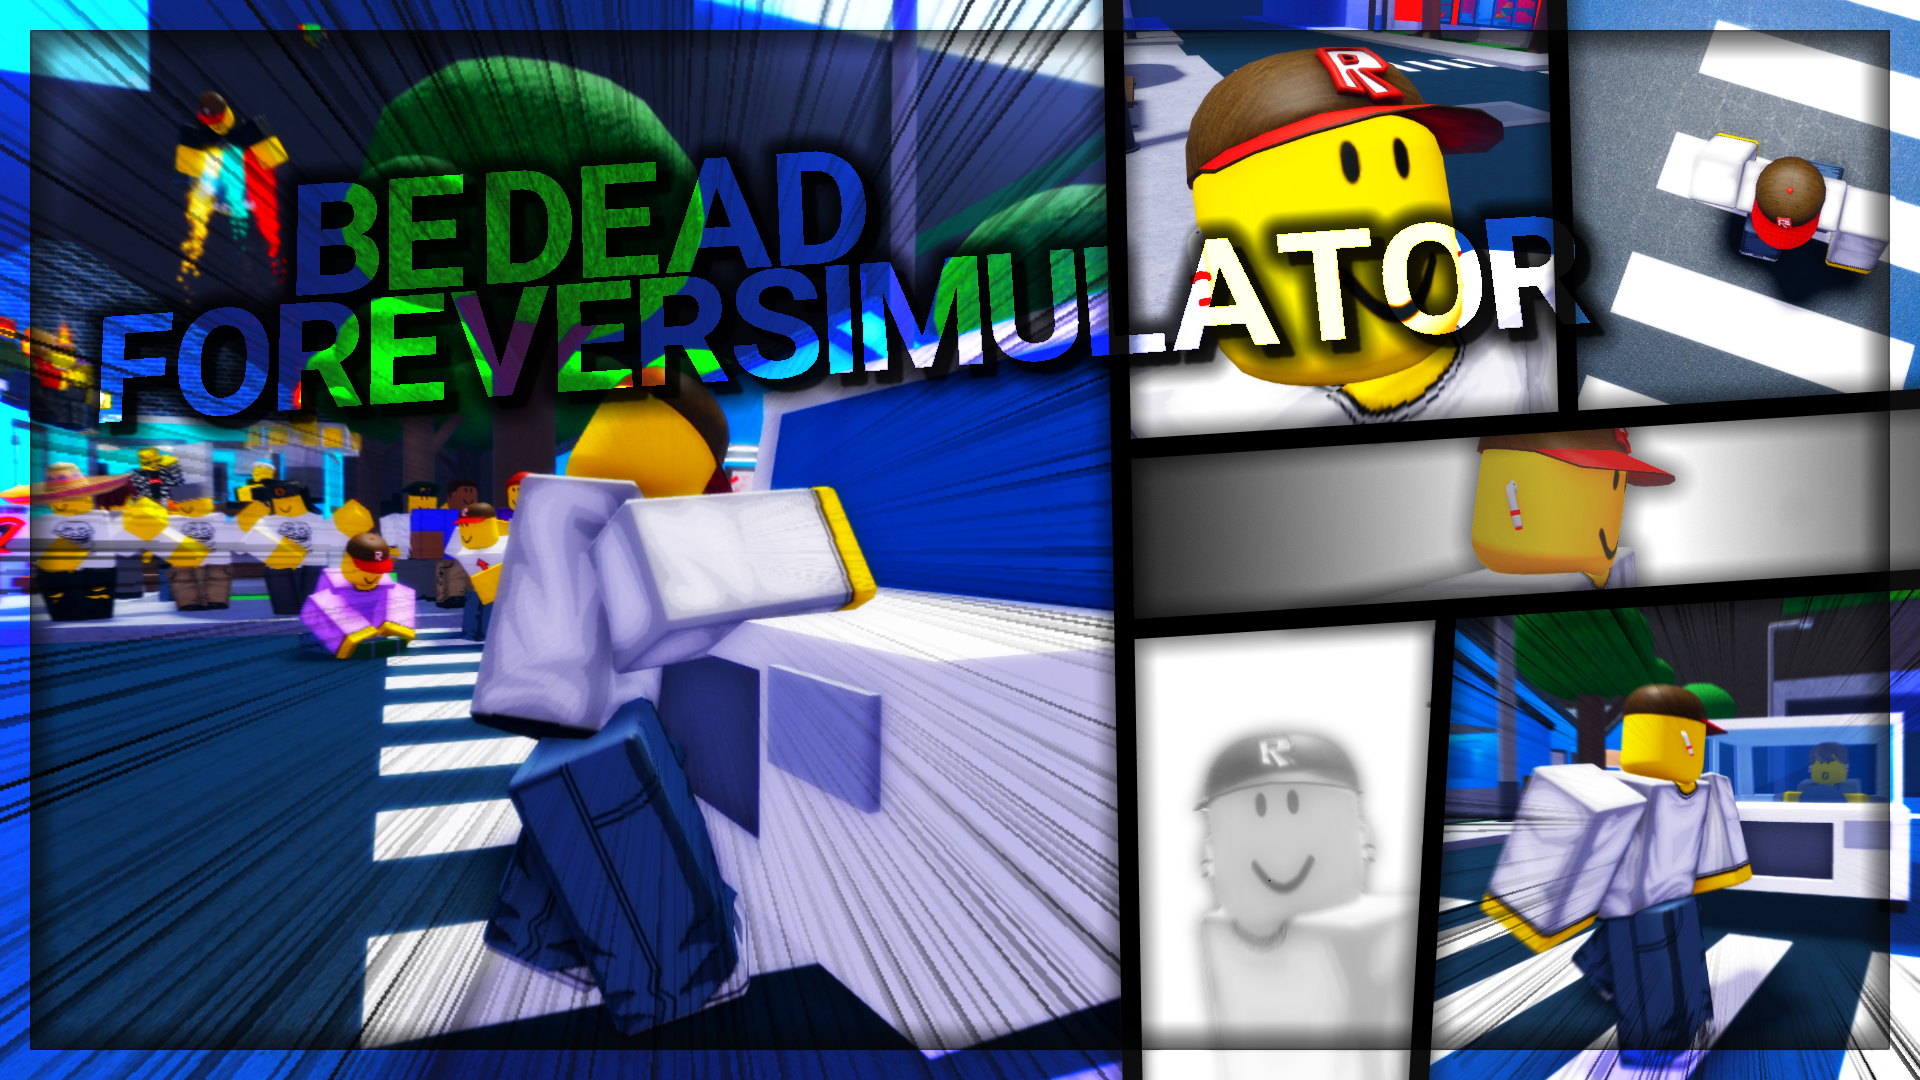 Be Dead Forever Simulator Roblox Wiki Fandom - roblox shopping simulator gui script